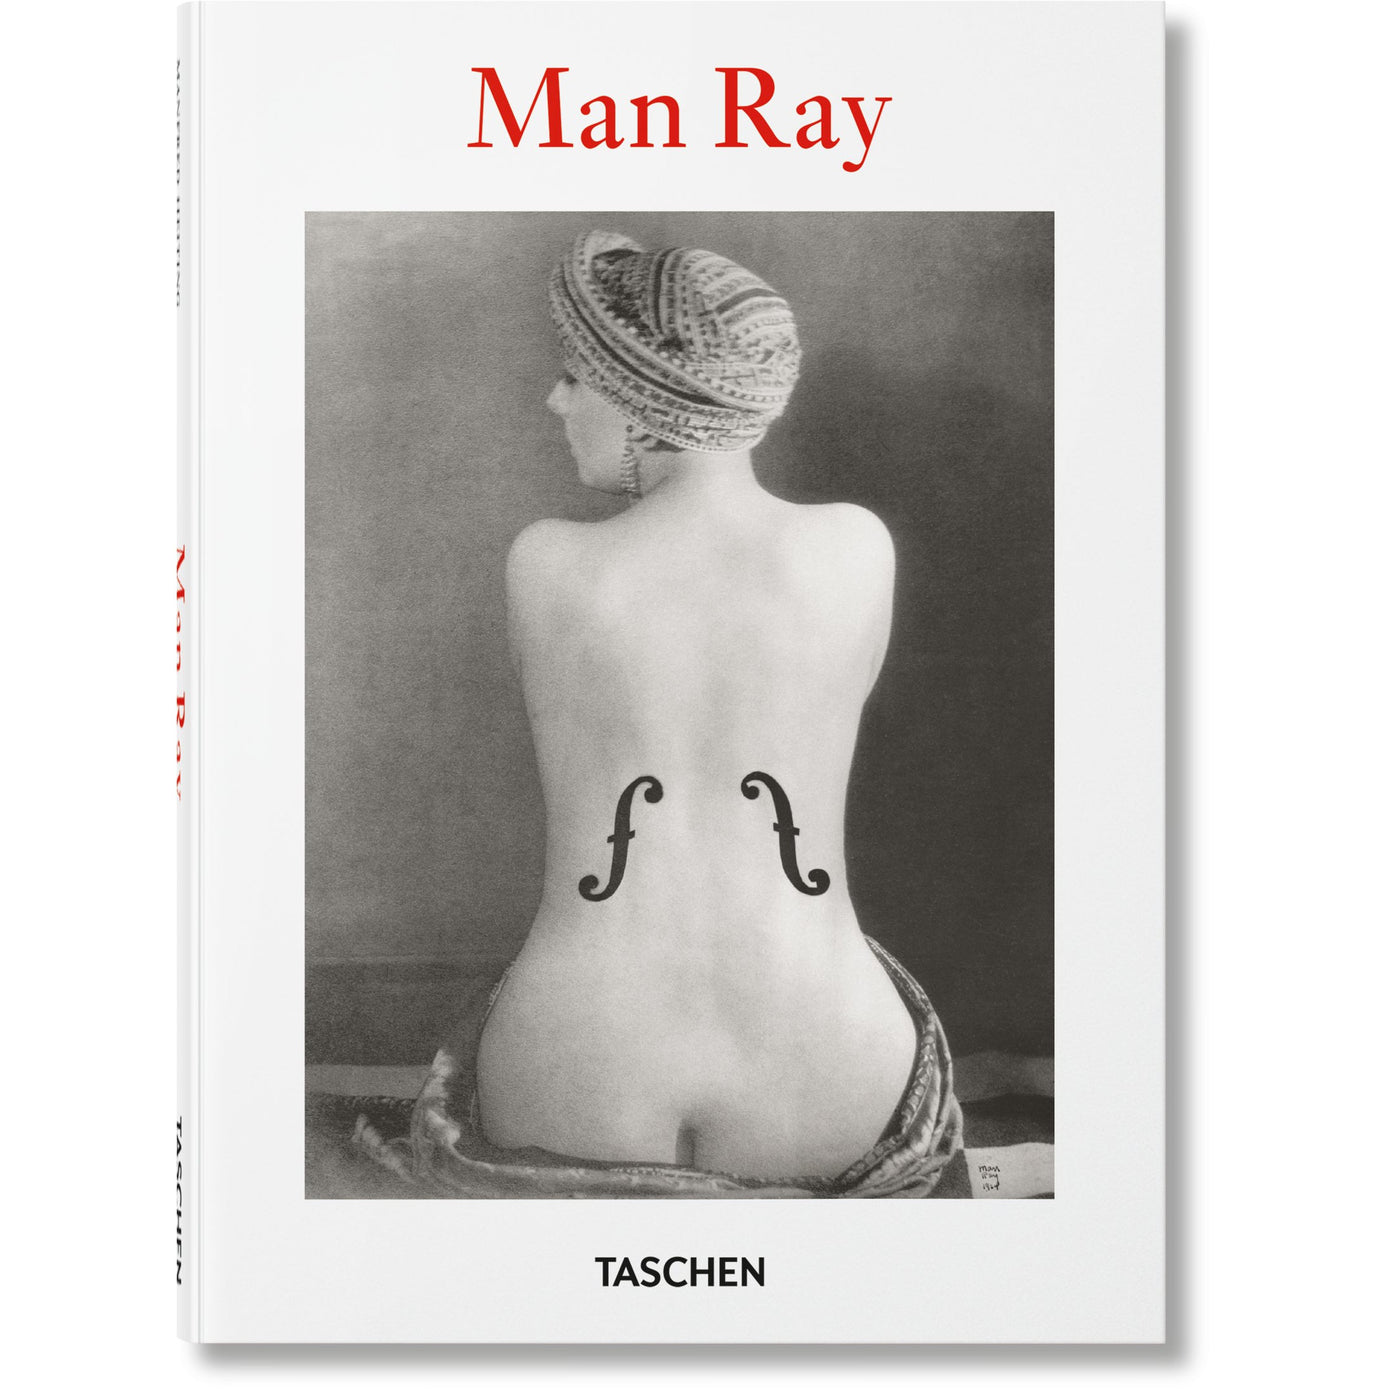 PO: Man Ray